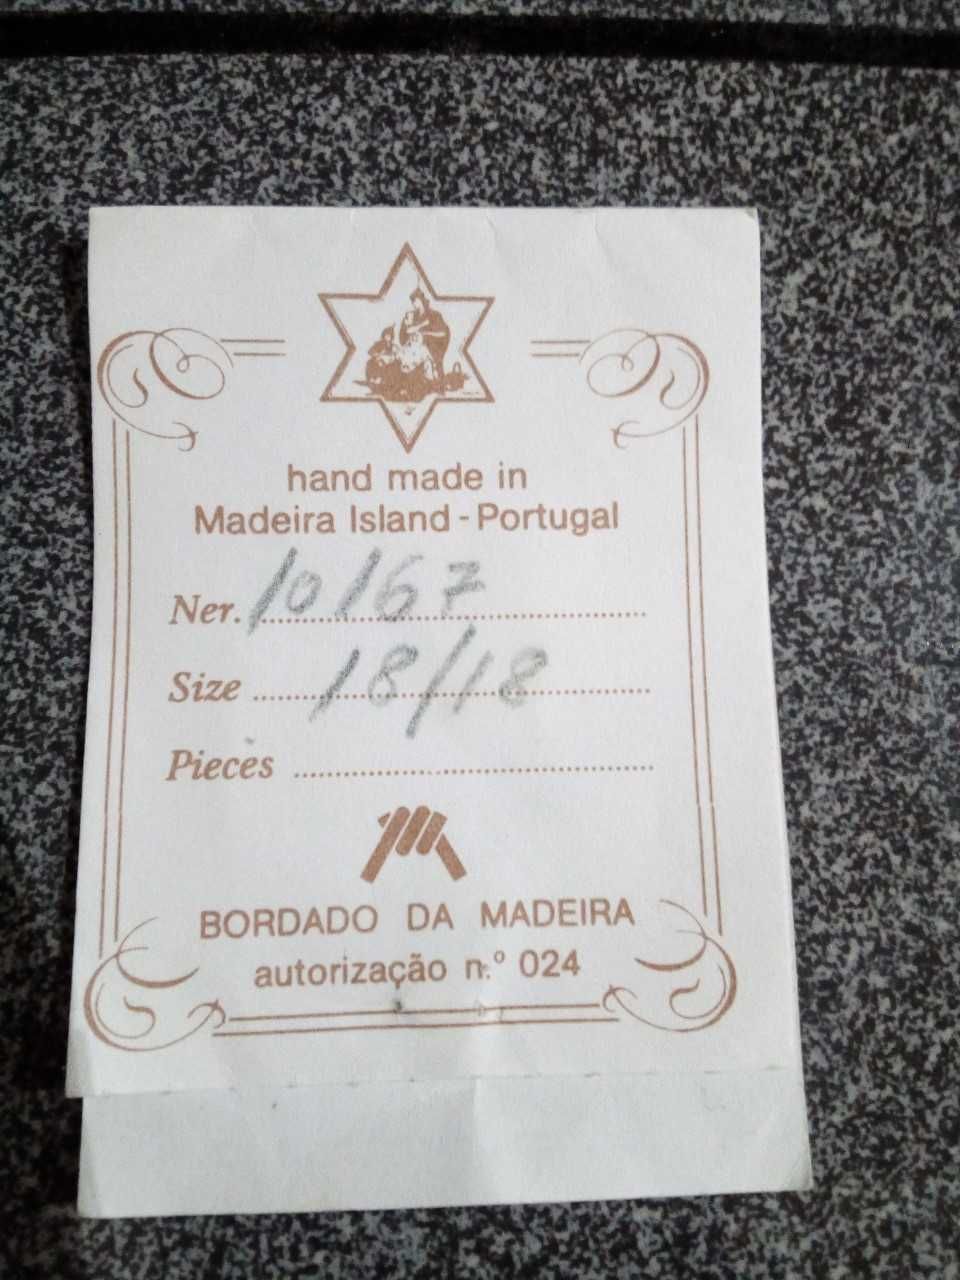 Bordados da Madeira (toalhas de mesa)